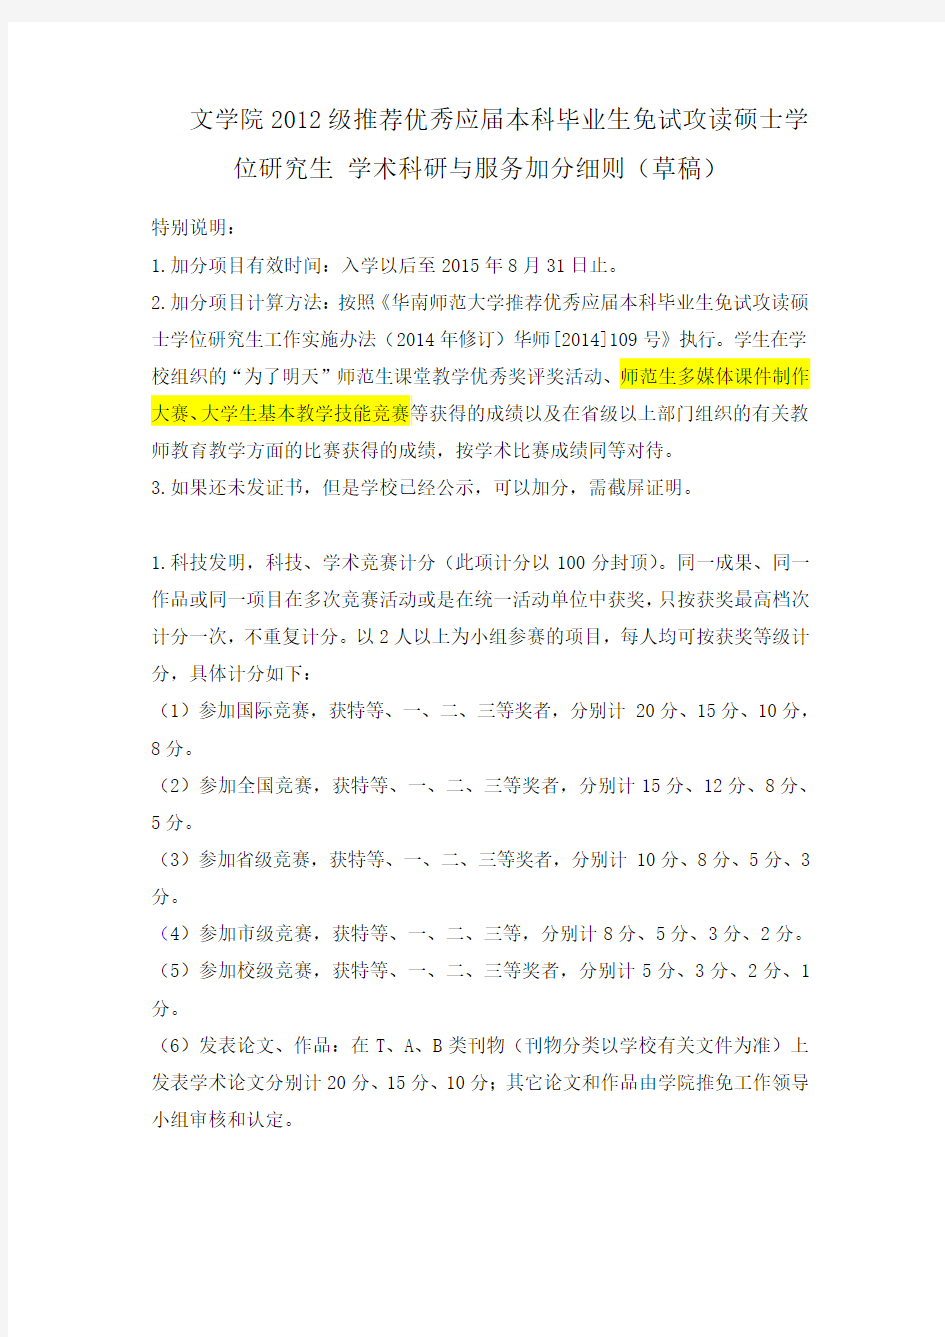 华南师范大学文学院2012级“4+2”保研加分细则(草稿)